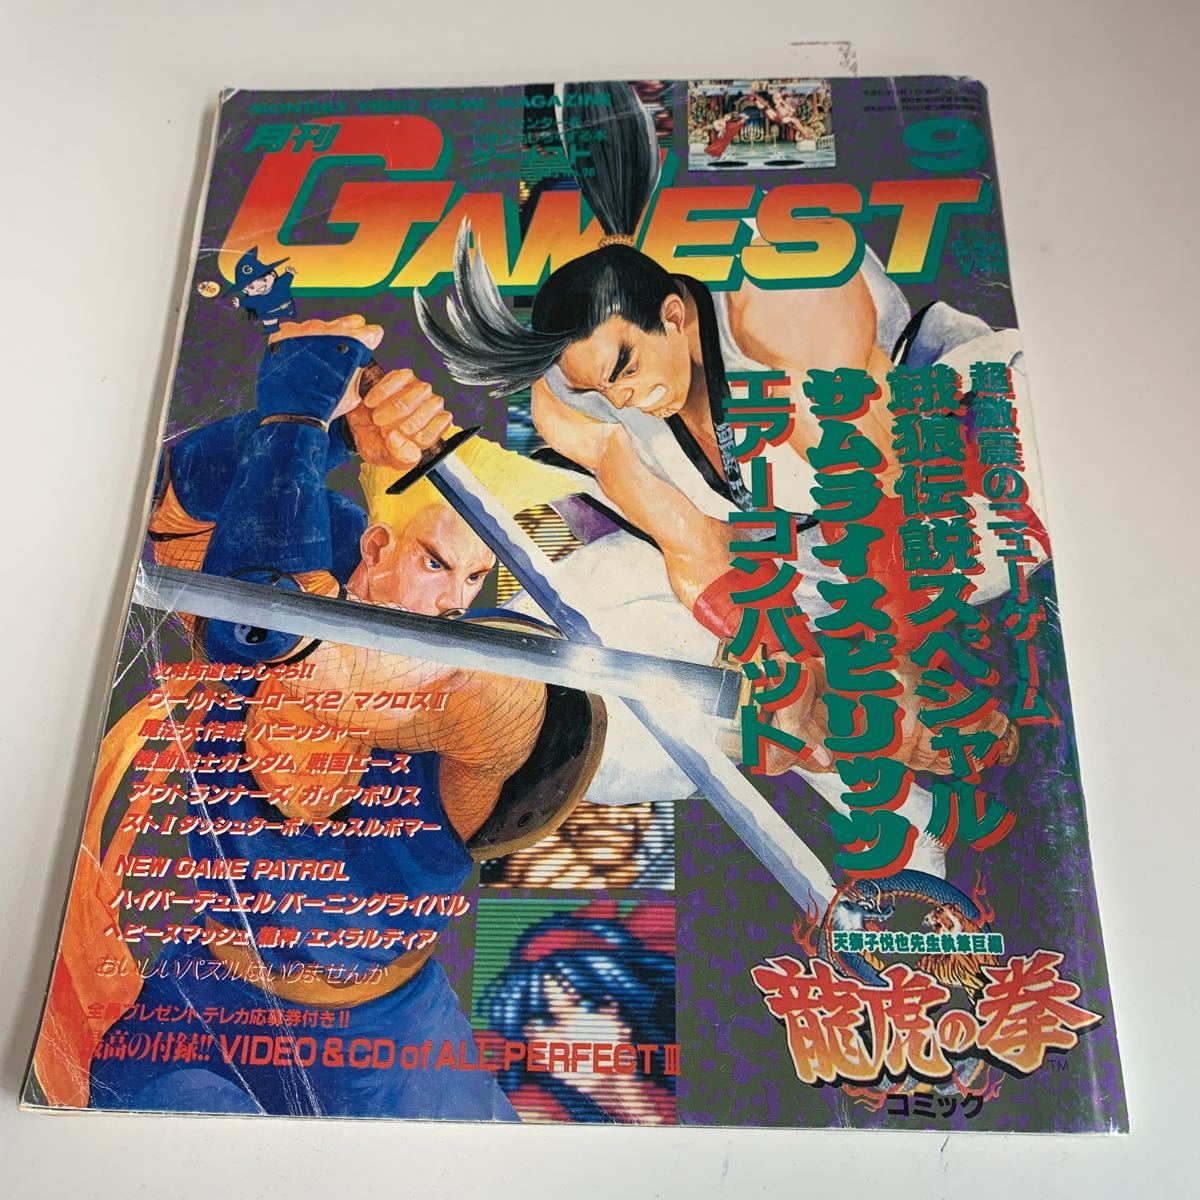 yk194@ 高評価なギフト 月刊ゲーメスト 9 GAMEST 1993年 有名人芸能人 サムライスピリッツ 餓狼伝説 RPG ニンテンドー DS ファミコン エアーコンバット PlayStation